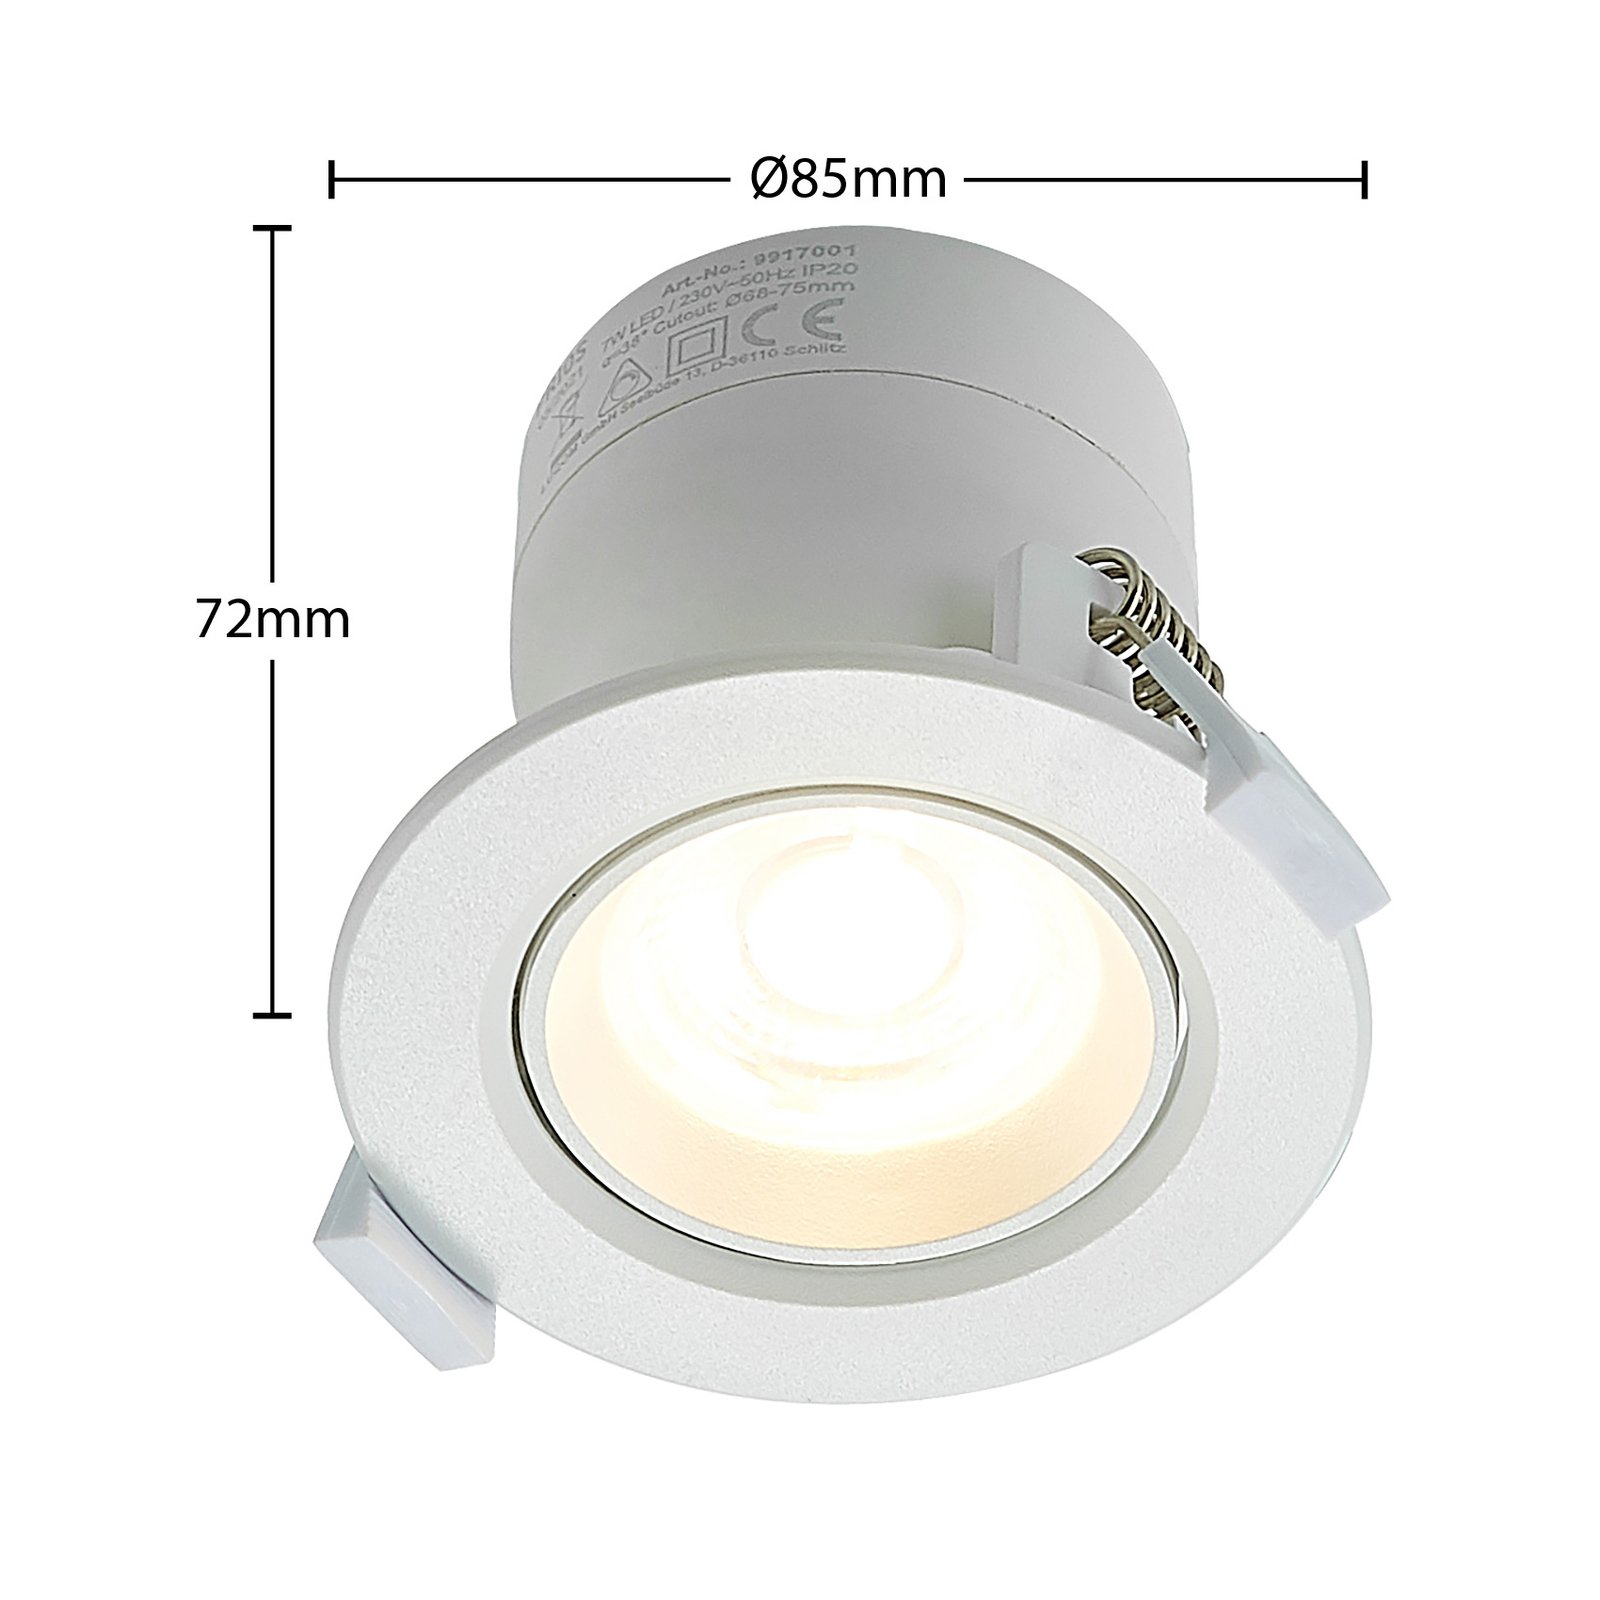 Prios Shima lampe encastrée LED blanche 3 000K, 7W